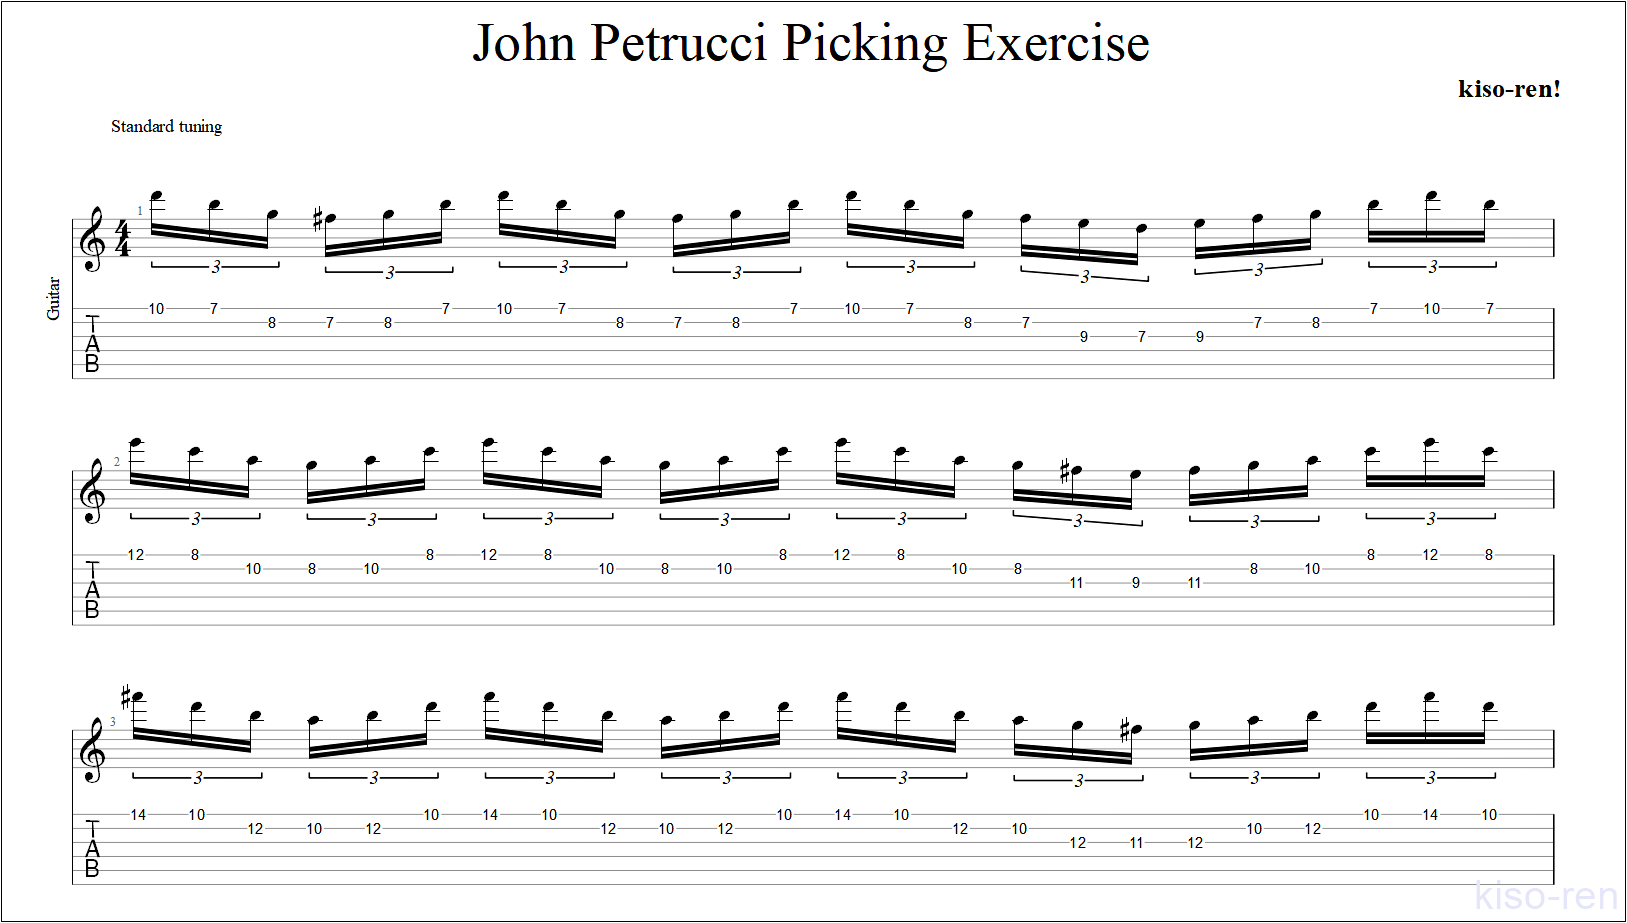 ジョン･ペトルーシの速弾き･フルピッキングを練習して上手くなる！【ギター】【TAB】ジョン･ペトルーシのギターのオススメ練習方法。速弾き･フルピッキング､スウィープ､タッピング､レガートなどバランスよく練習できます！